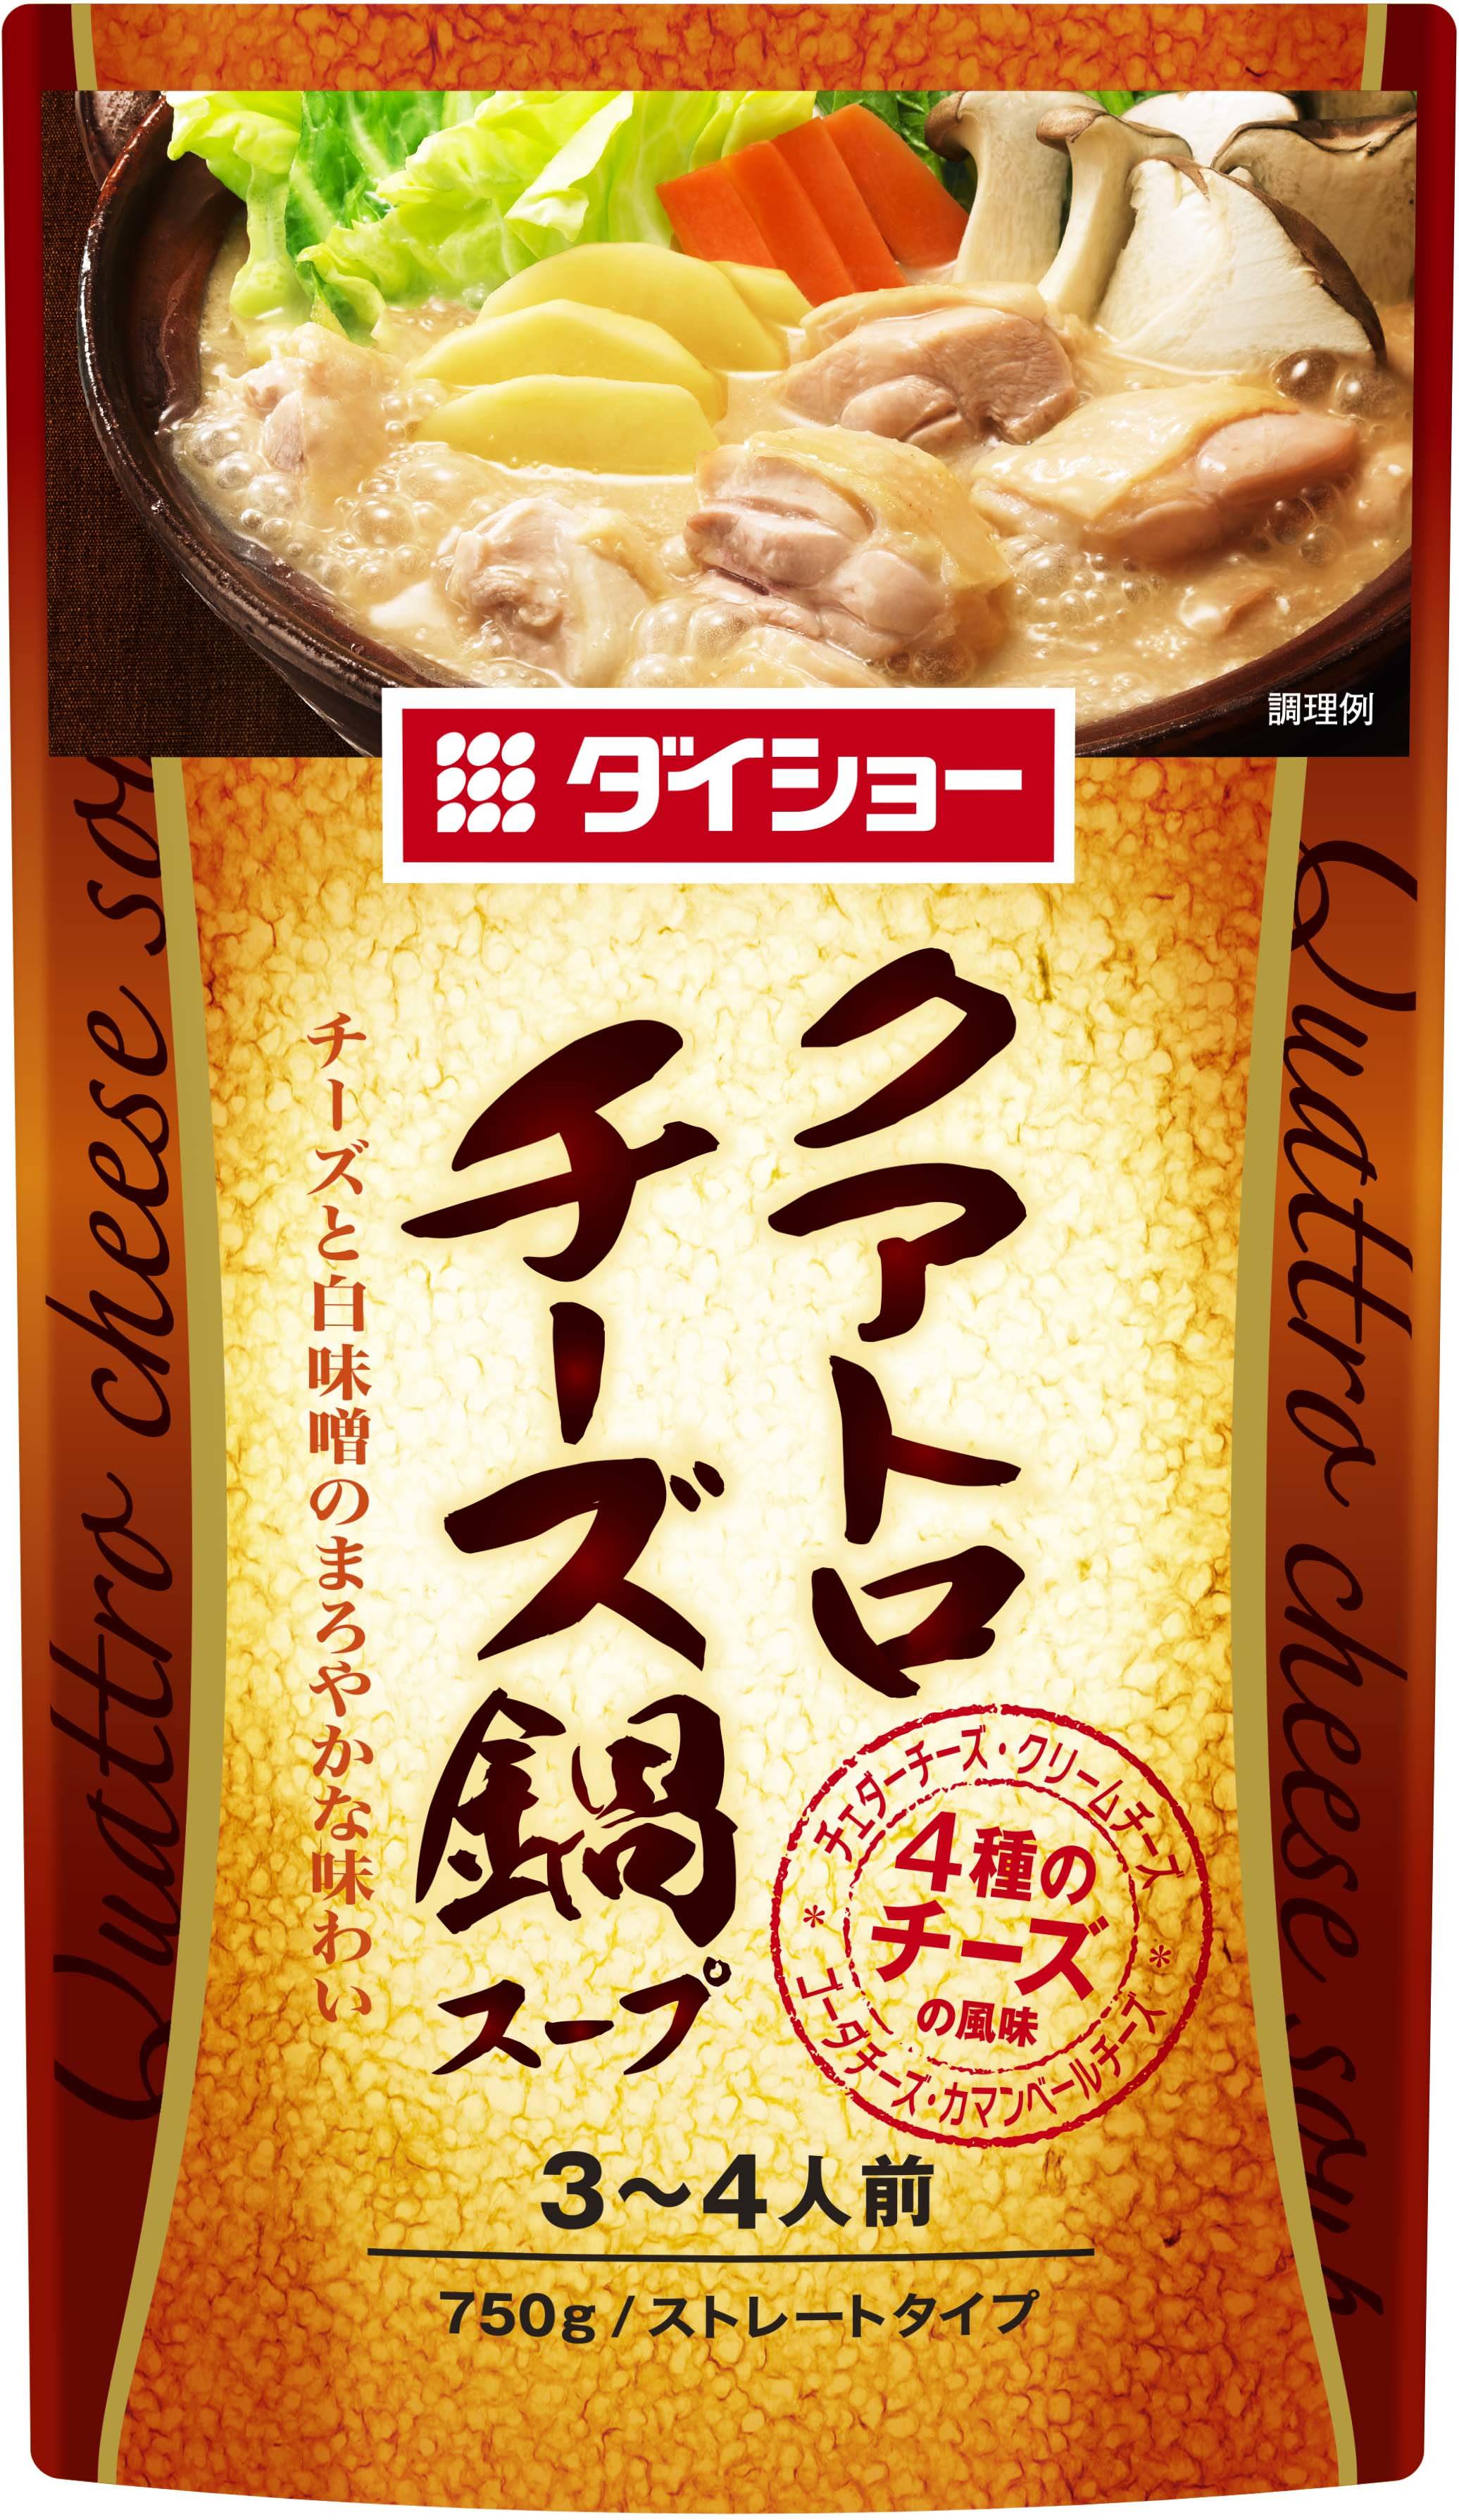 “肉の老舗 柿安”、第3のフードコート向け新ブランドが誕生
『石焼牛肉炒飯 柿安(いしやきぎゅうにくちゃーはん かきやす)』